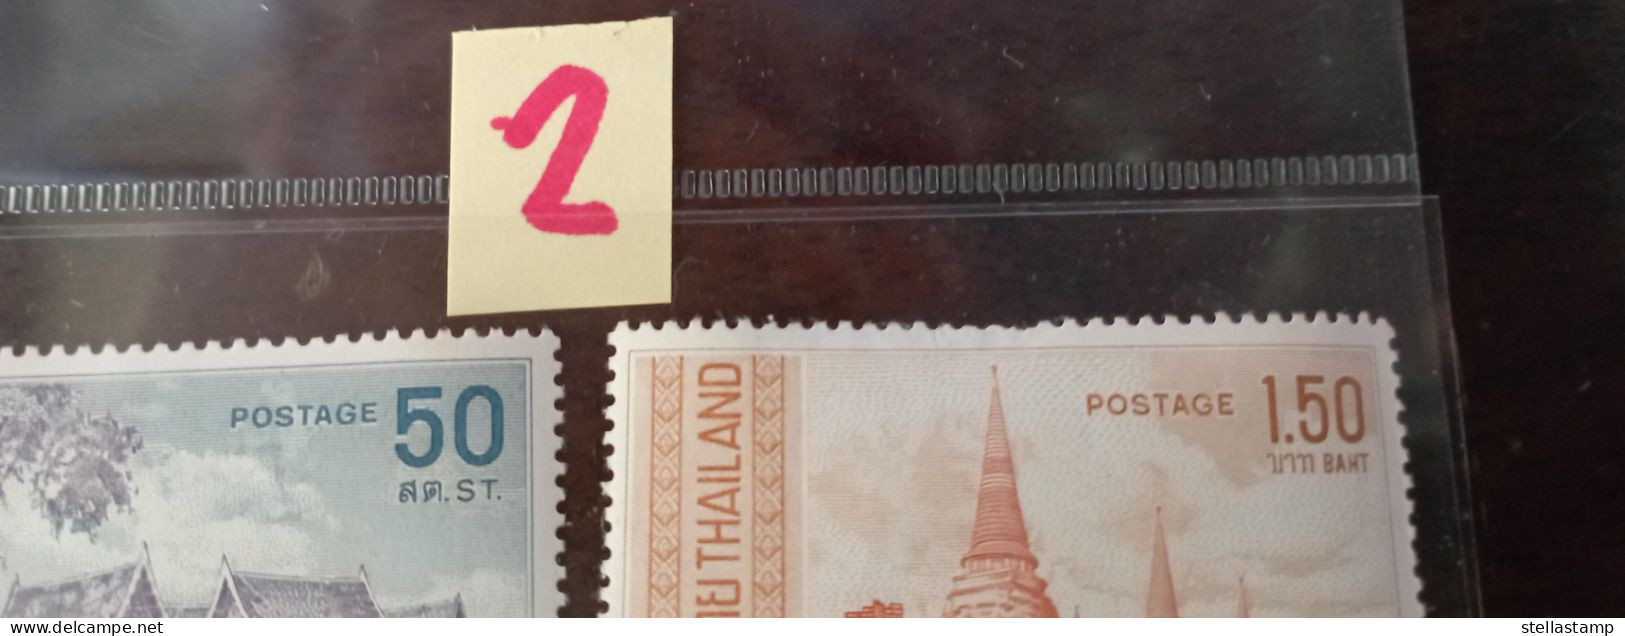 Thailand Stamp 1967 Thai Architecture (Fine MNH) #2 - Thailand